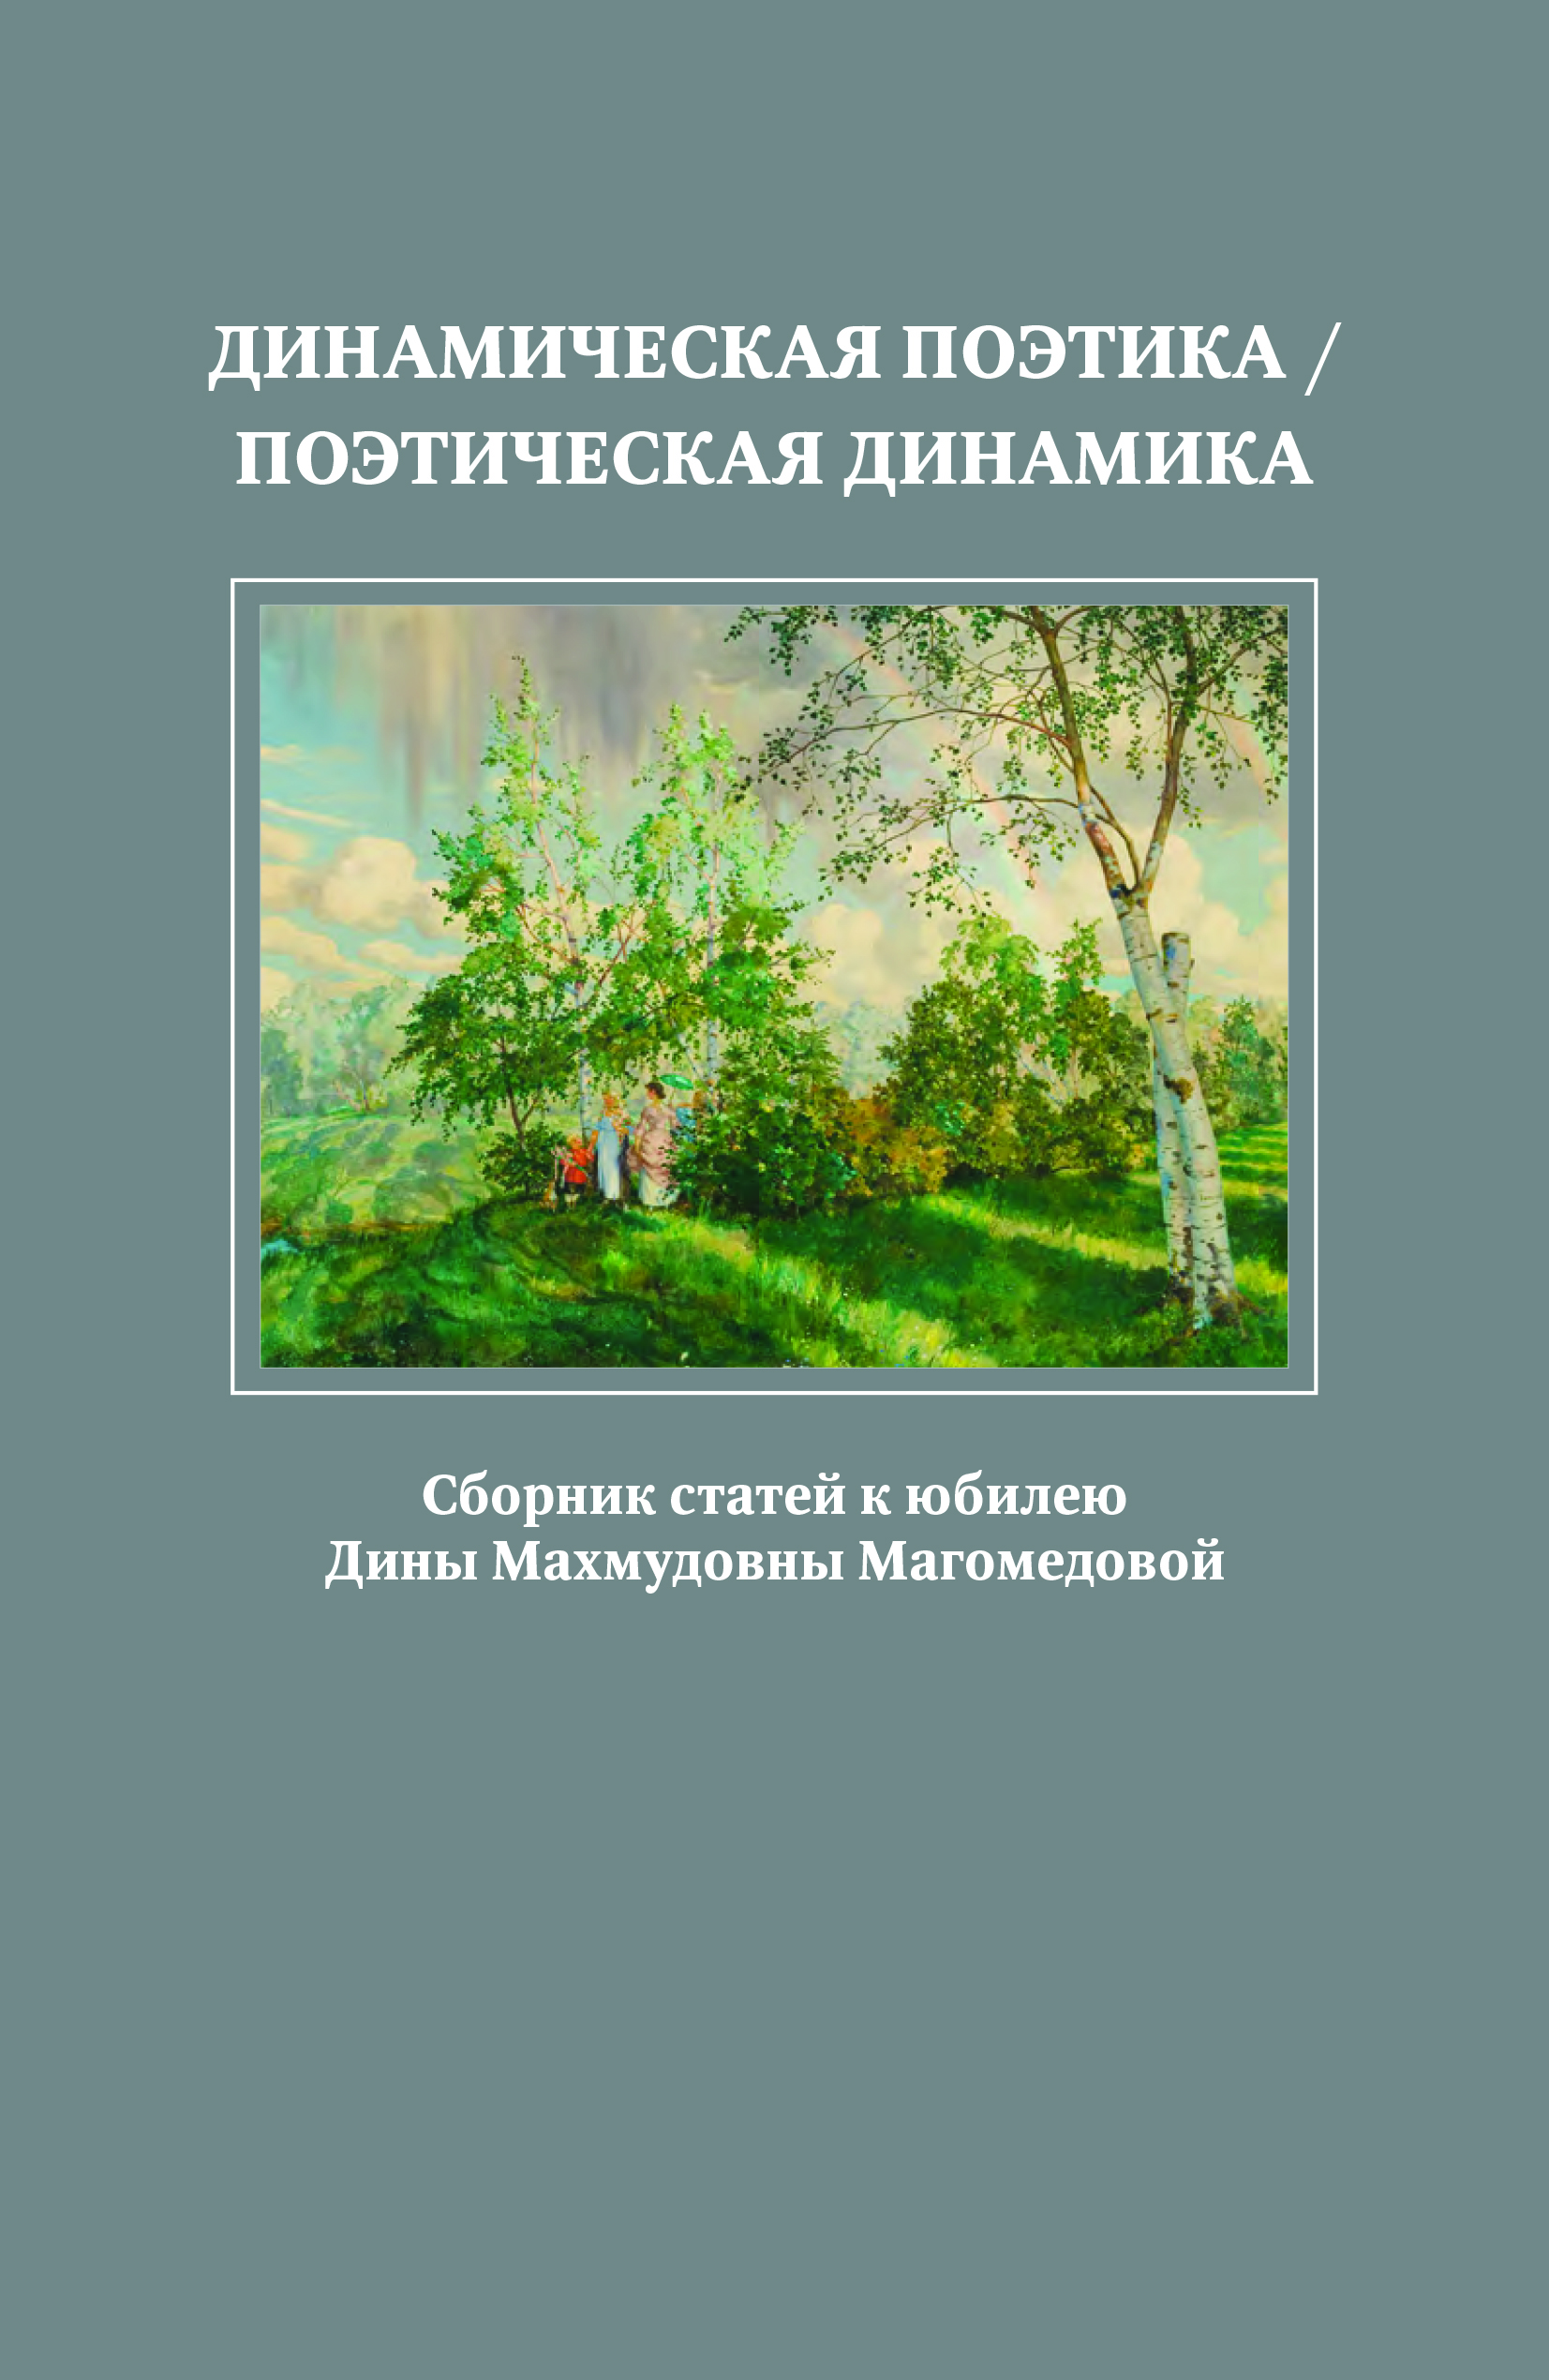 Cover of Динамическая поэтика / Поэтическая динамика: сборник статей к юбилею Дины Махмудовны Магомедовой